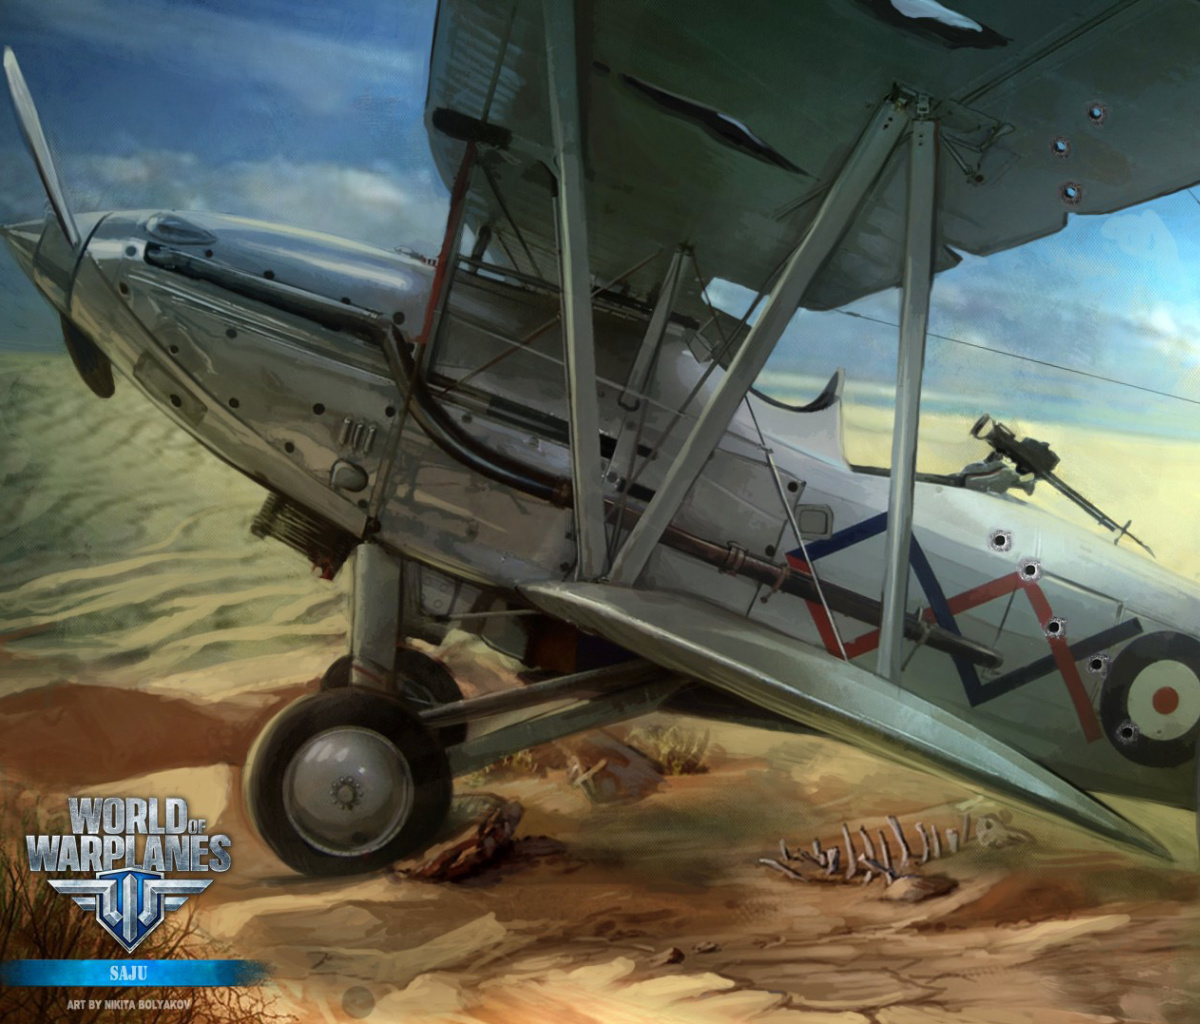 World of Warplanes wallpaper 1200x1024